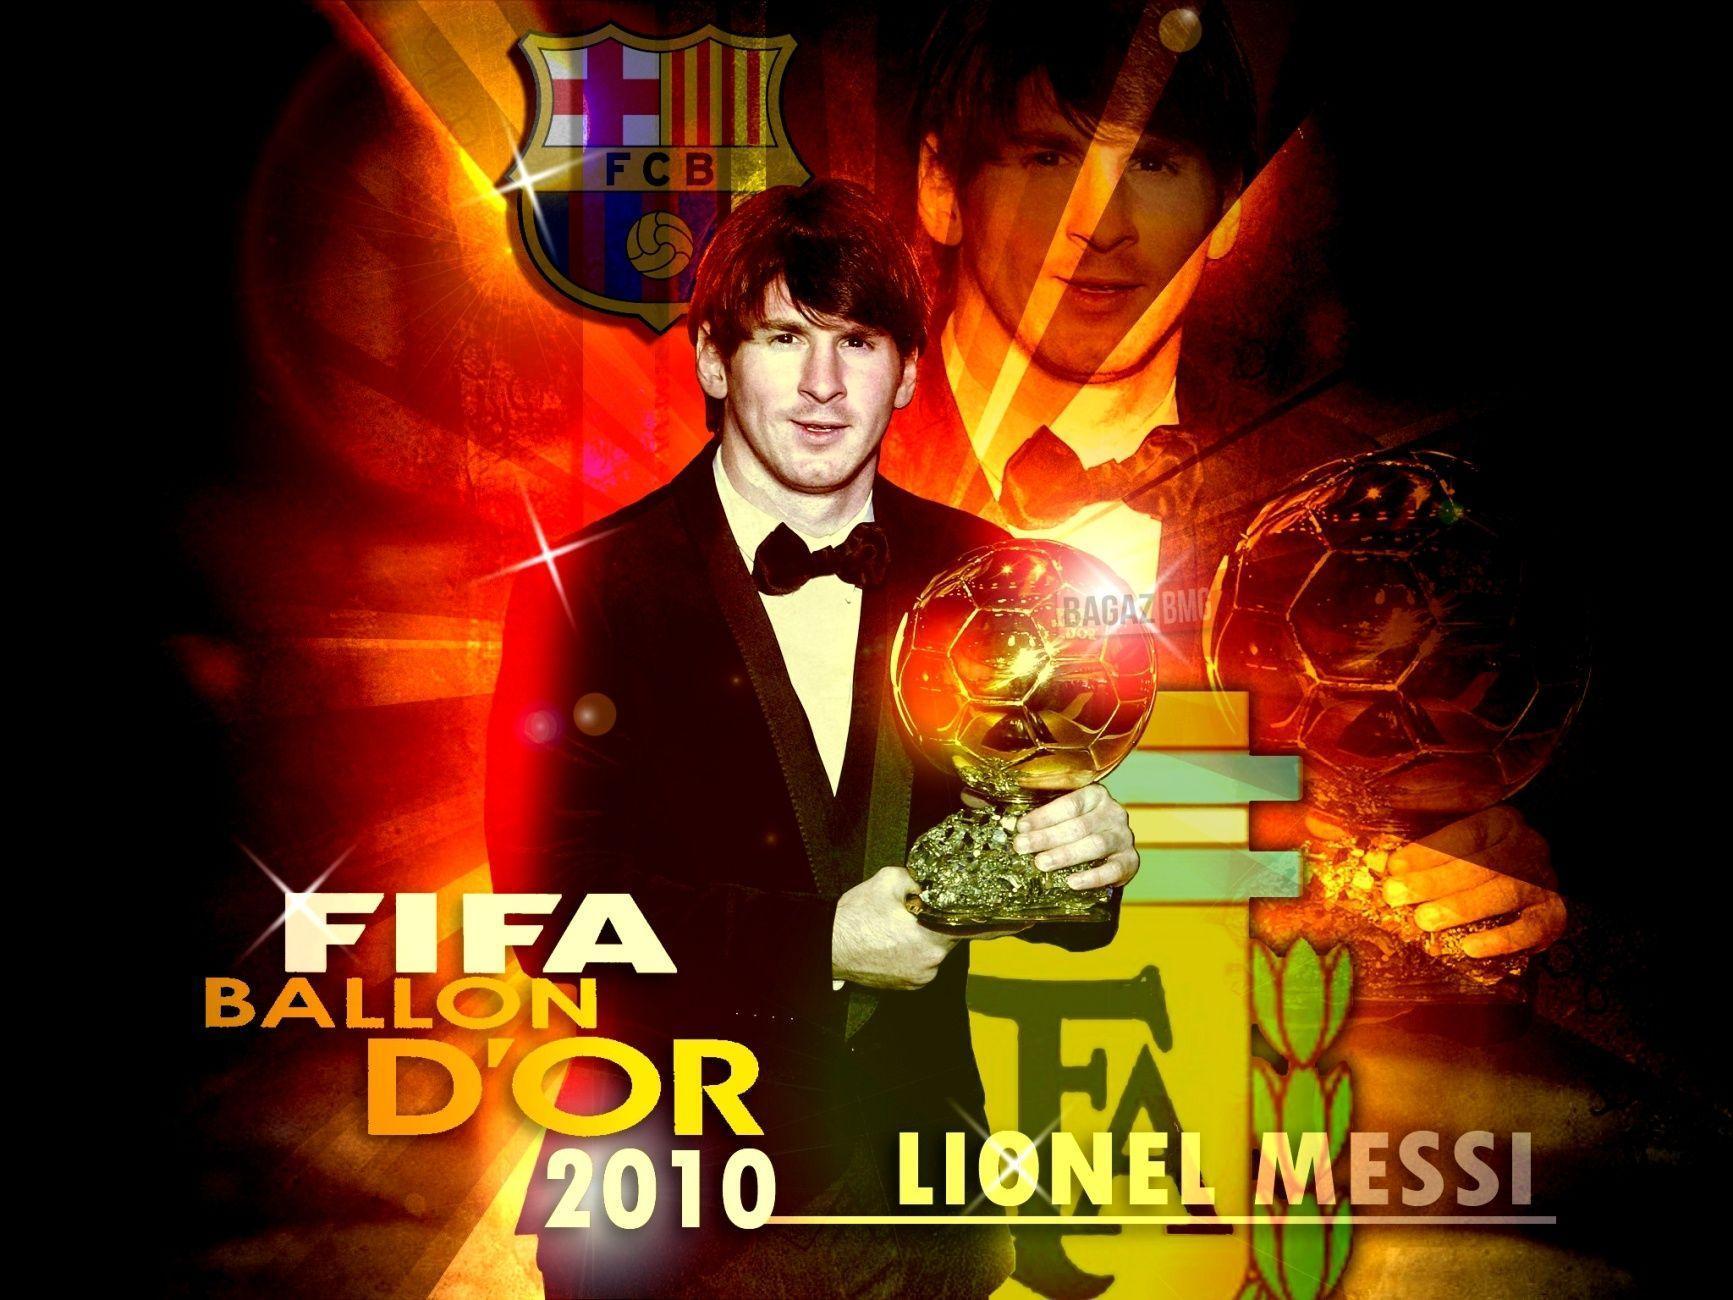 Lionel messi fifa ballon d or 2010 barcelona fc wallpaper